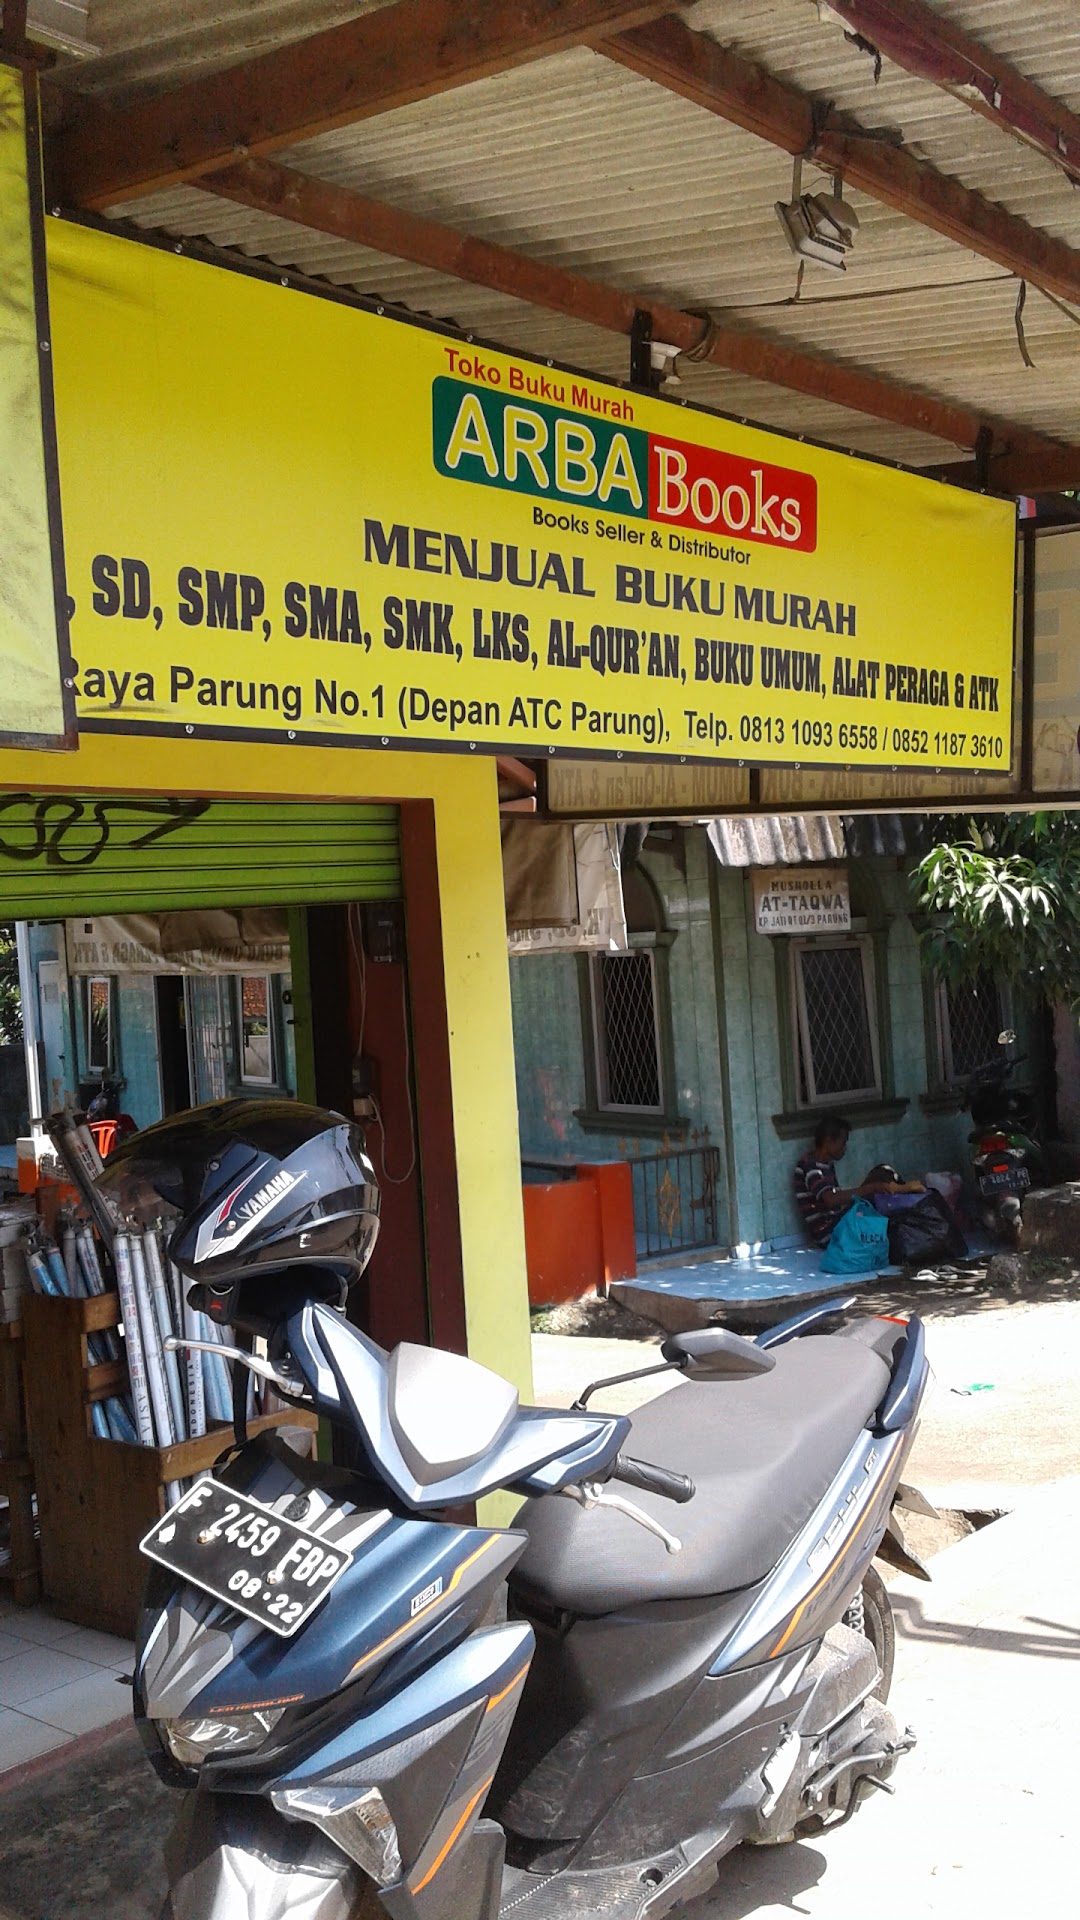 Arba Books